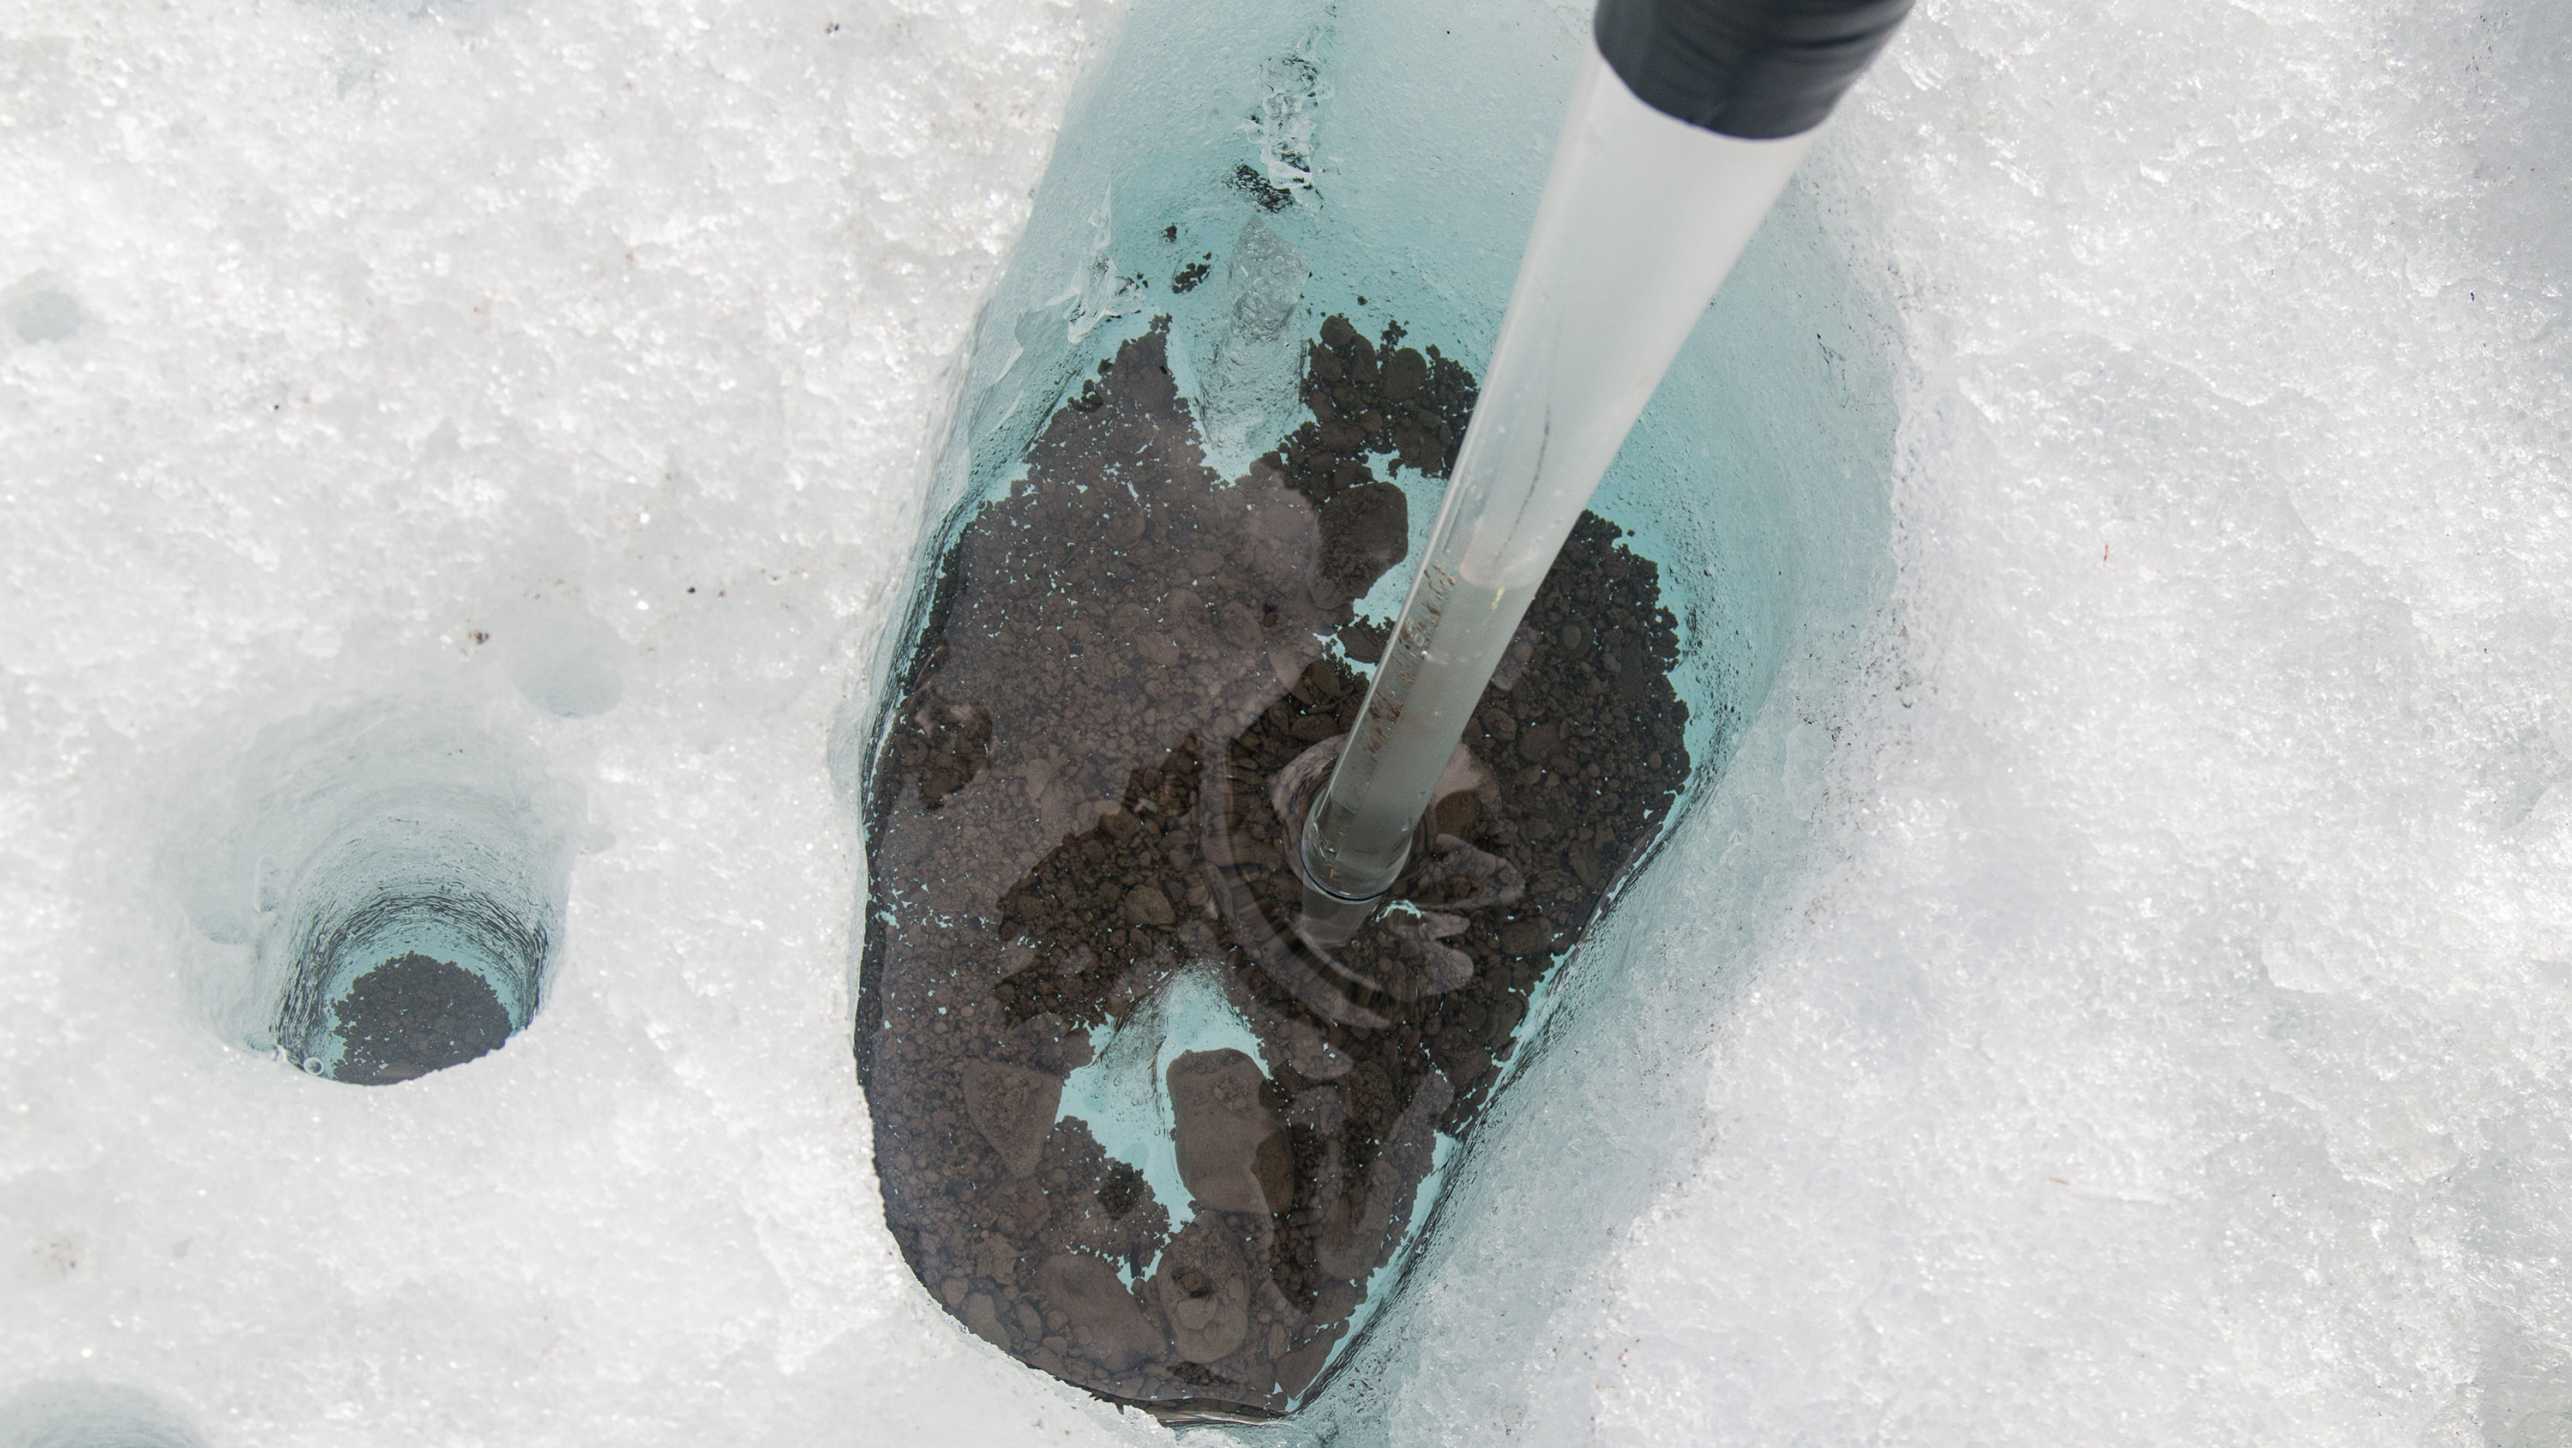 Bohrkern bei einem Gletscher, unter der Eisschicht sind dunkle Sedimente erkennbar.